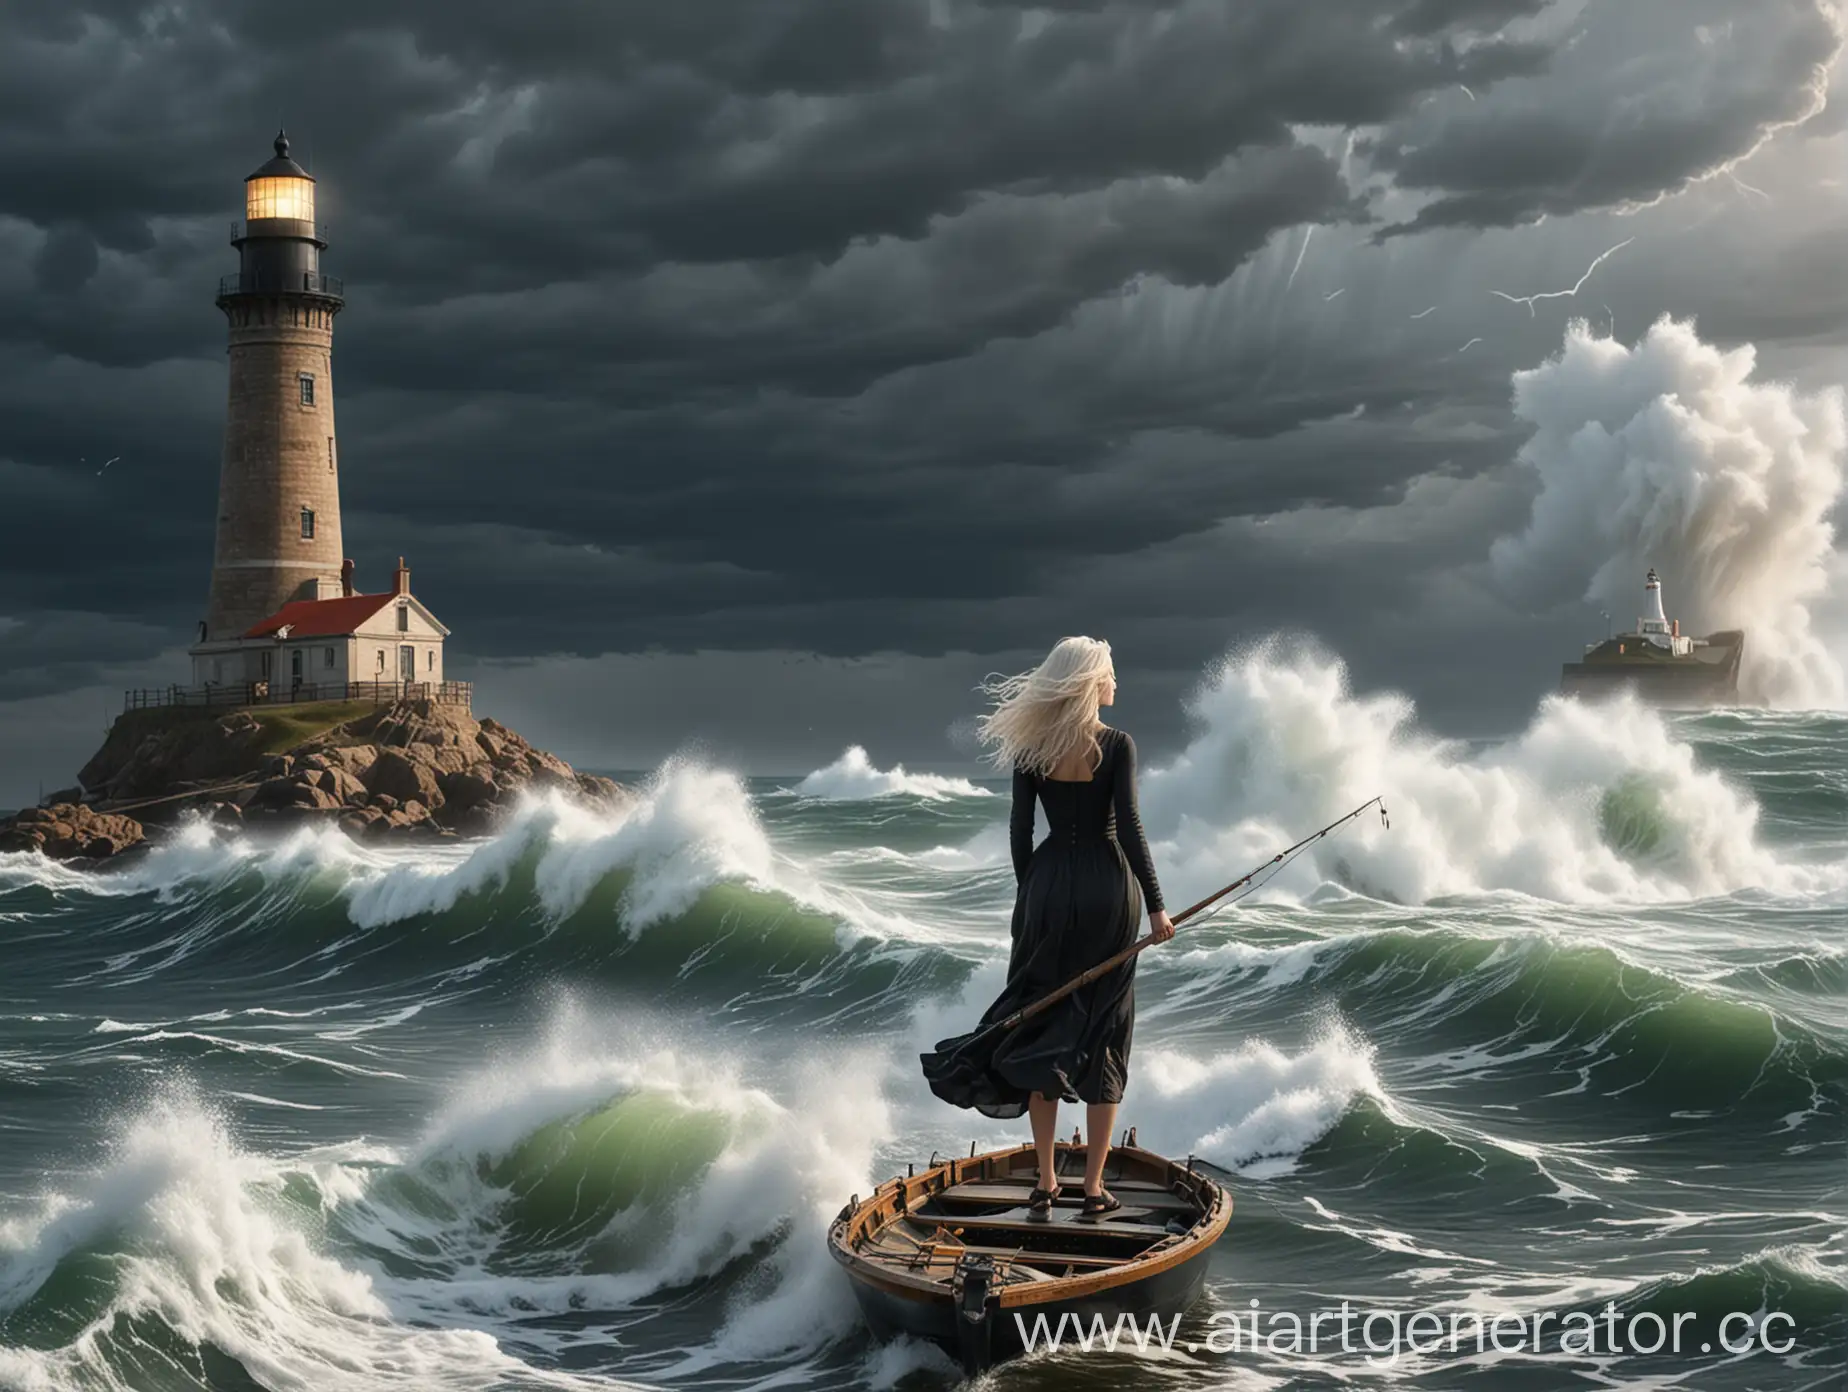 Шторм, большие волны, вдалеке видно девушку с белыми волосами, в черном платье, которая рыбачит на лодке, на фоне маяк